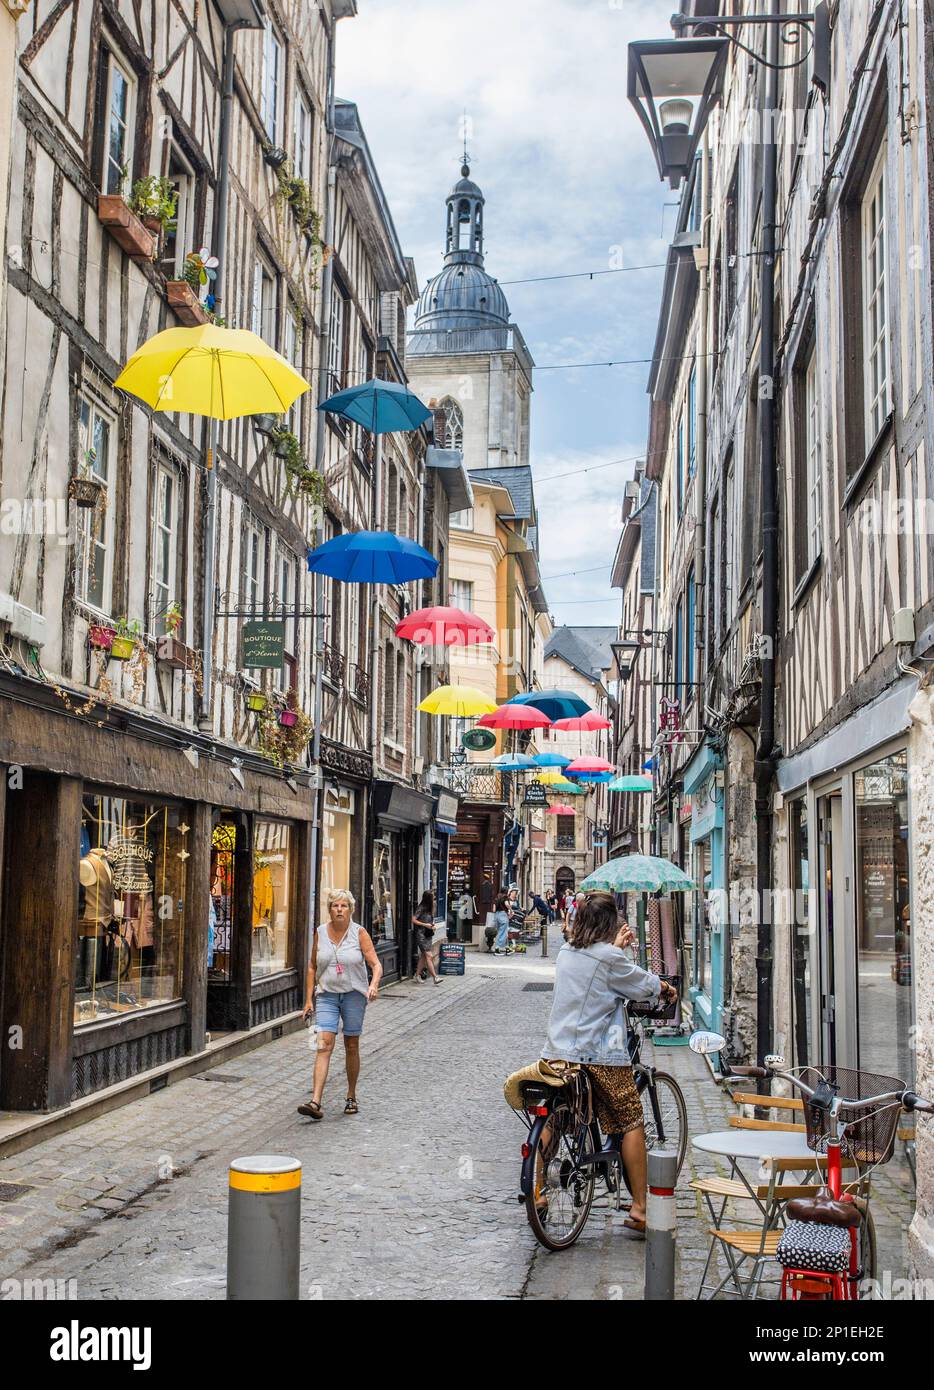 Pictouresque rue massacre à Rouen a été pendant plusieurs siècles la rue de la guilde de bouchers, se référant à l'abattage des animaux qui ont pris plac Banque D'Images